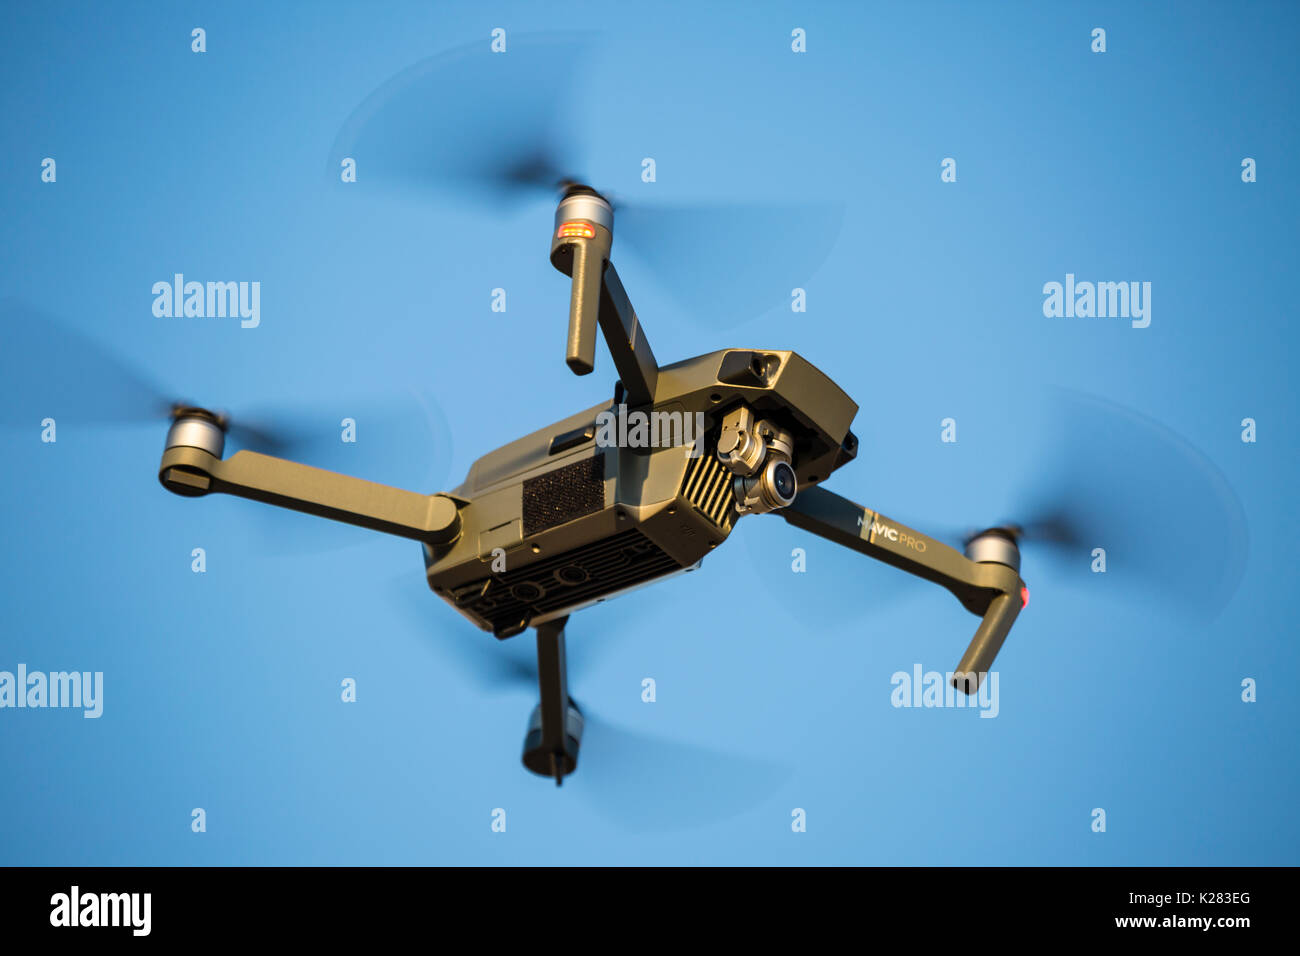 Mavic Pro quadcopter drone volando contra un cielo azul. Foto de stock